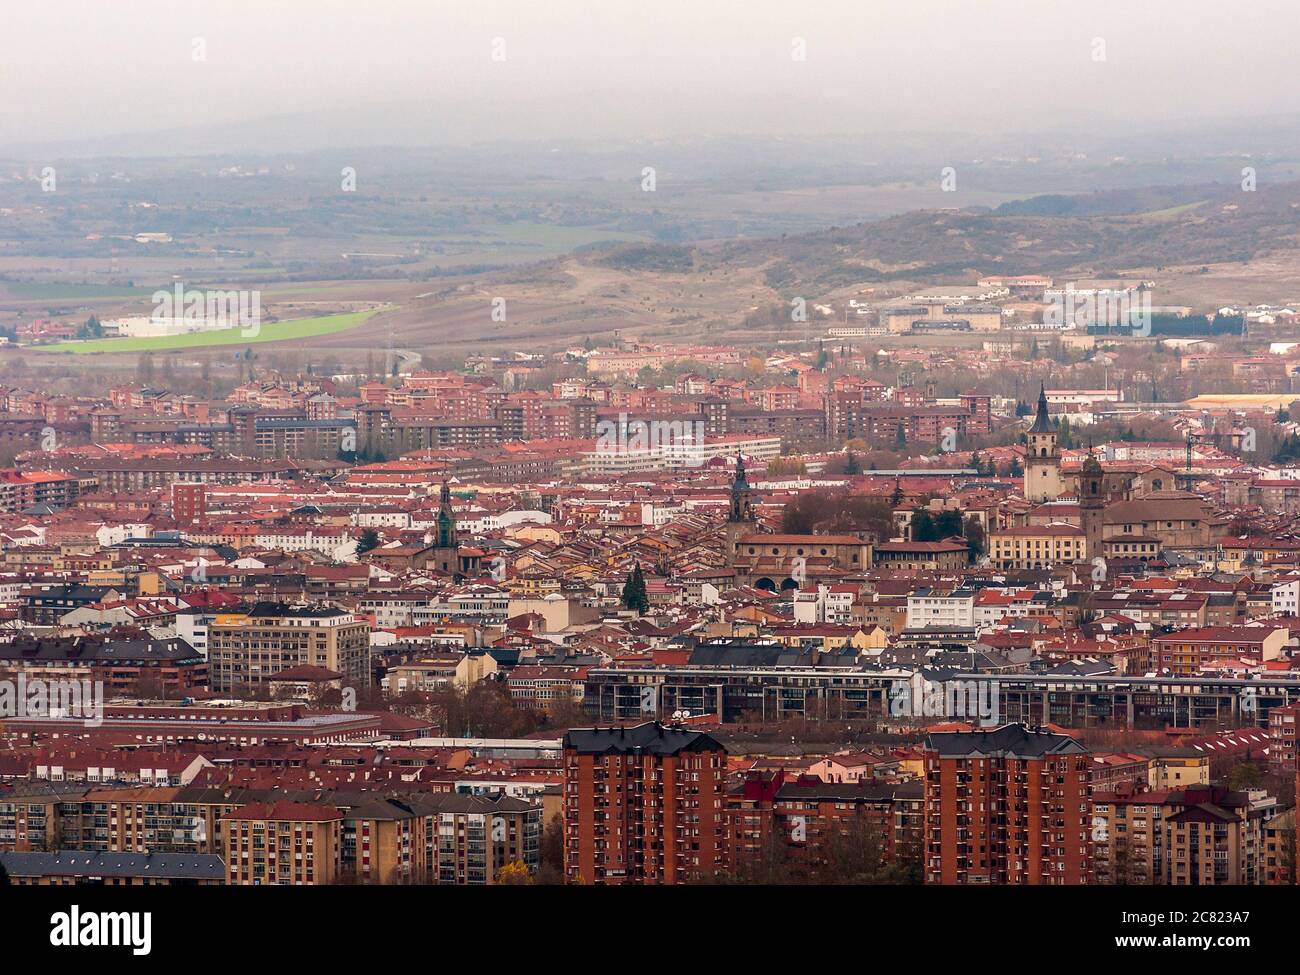 Vistas de Vitoria desde el mirador o balcón de Olárizu. Vitoria. Álava. País Vasco. España Stock Photo